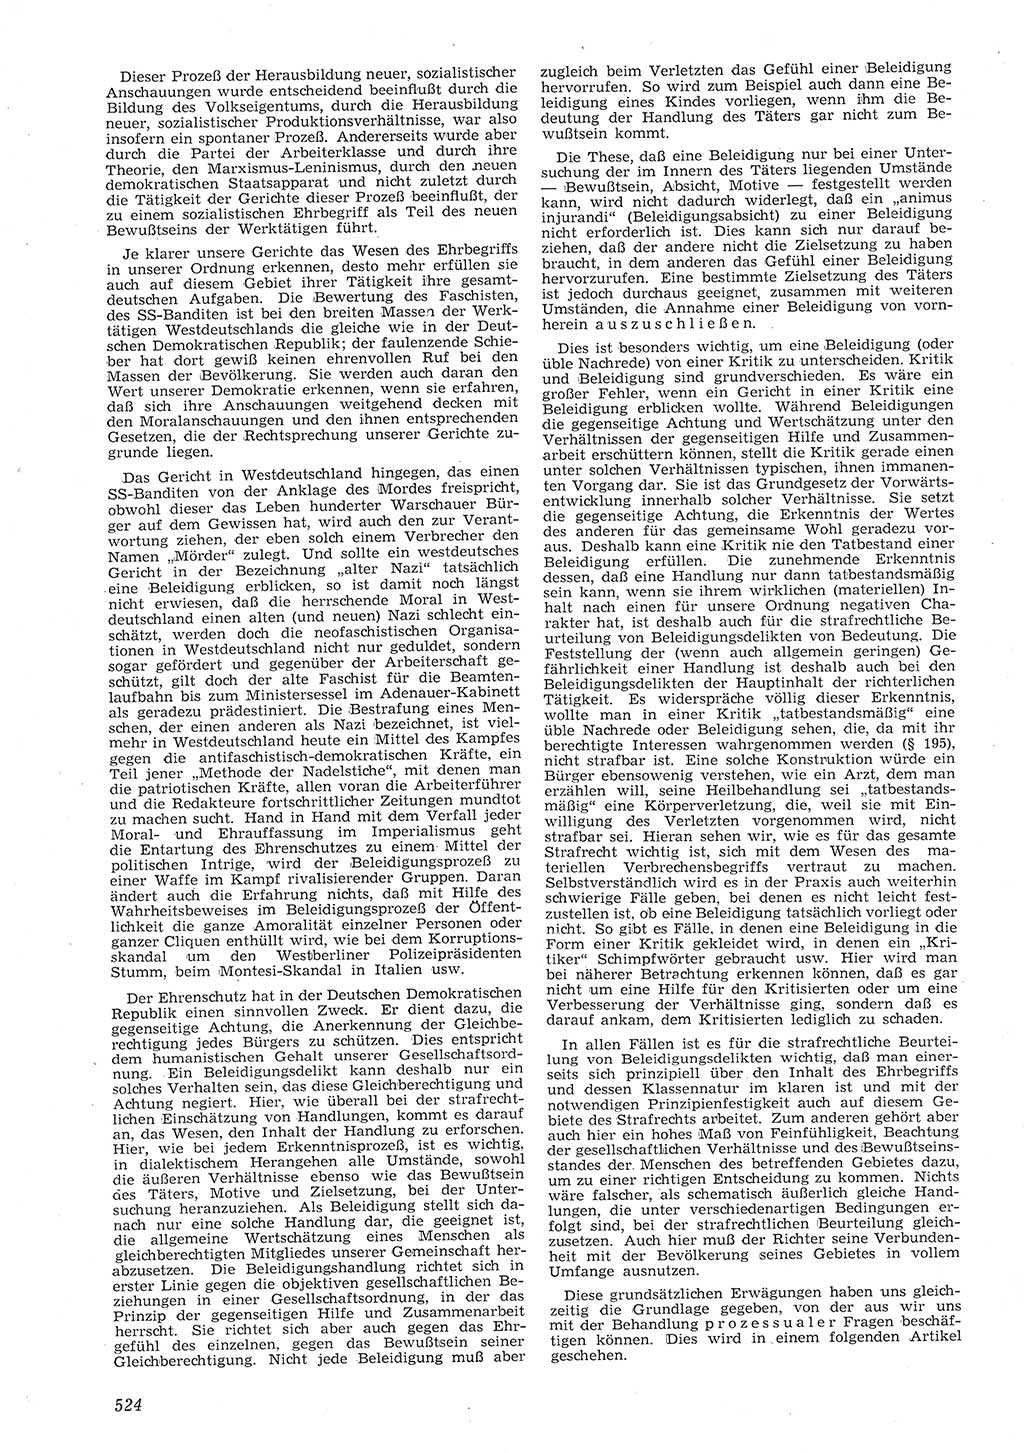 Neue Justiz (NJ), Zeitschrift für Recht und Rechtswissenschaft [Deutsche Demokratische Republik (DDR)], 8. Jahrgang 1954, Seite 524 (NJ DDR 1954, S. 524)